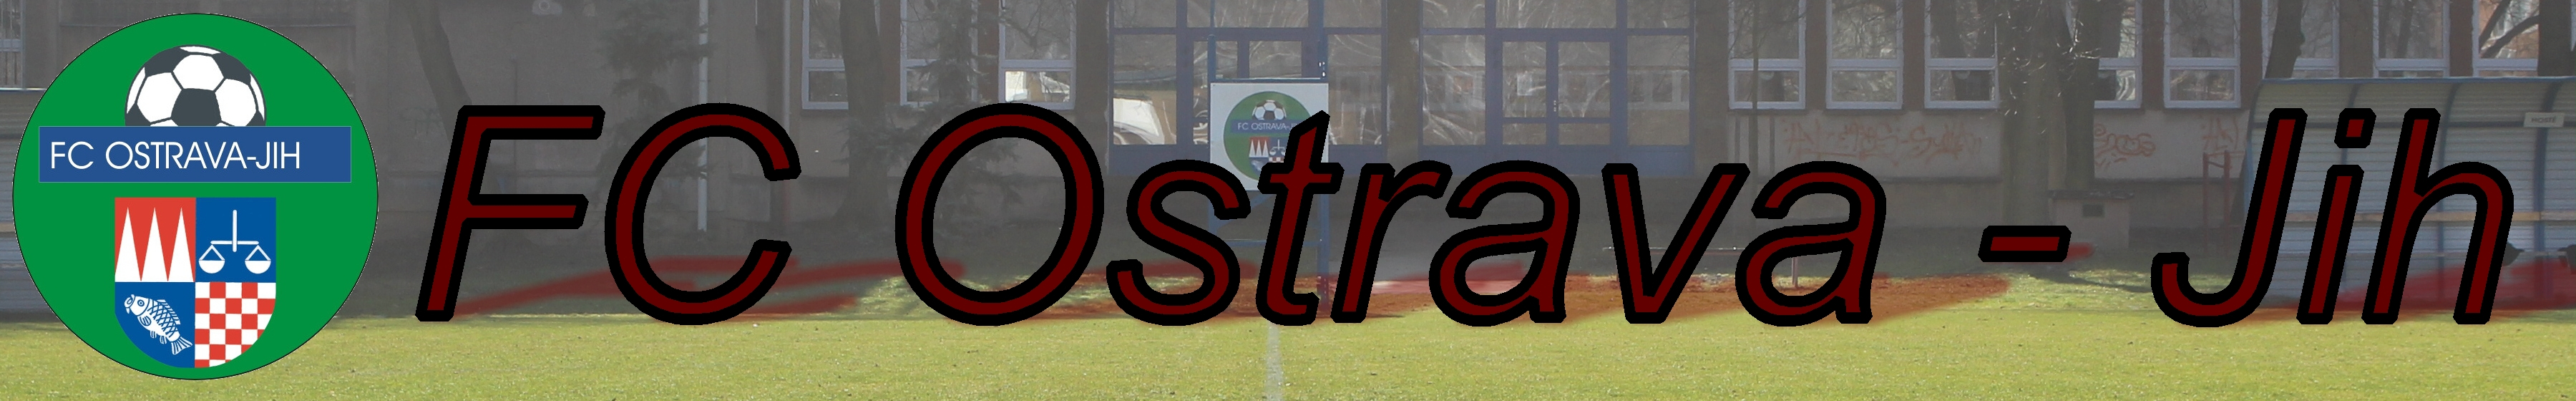 FC Ostrava - Jih